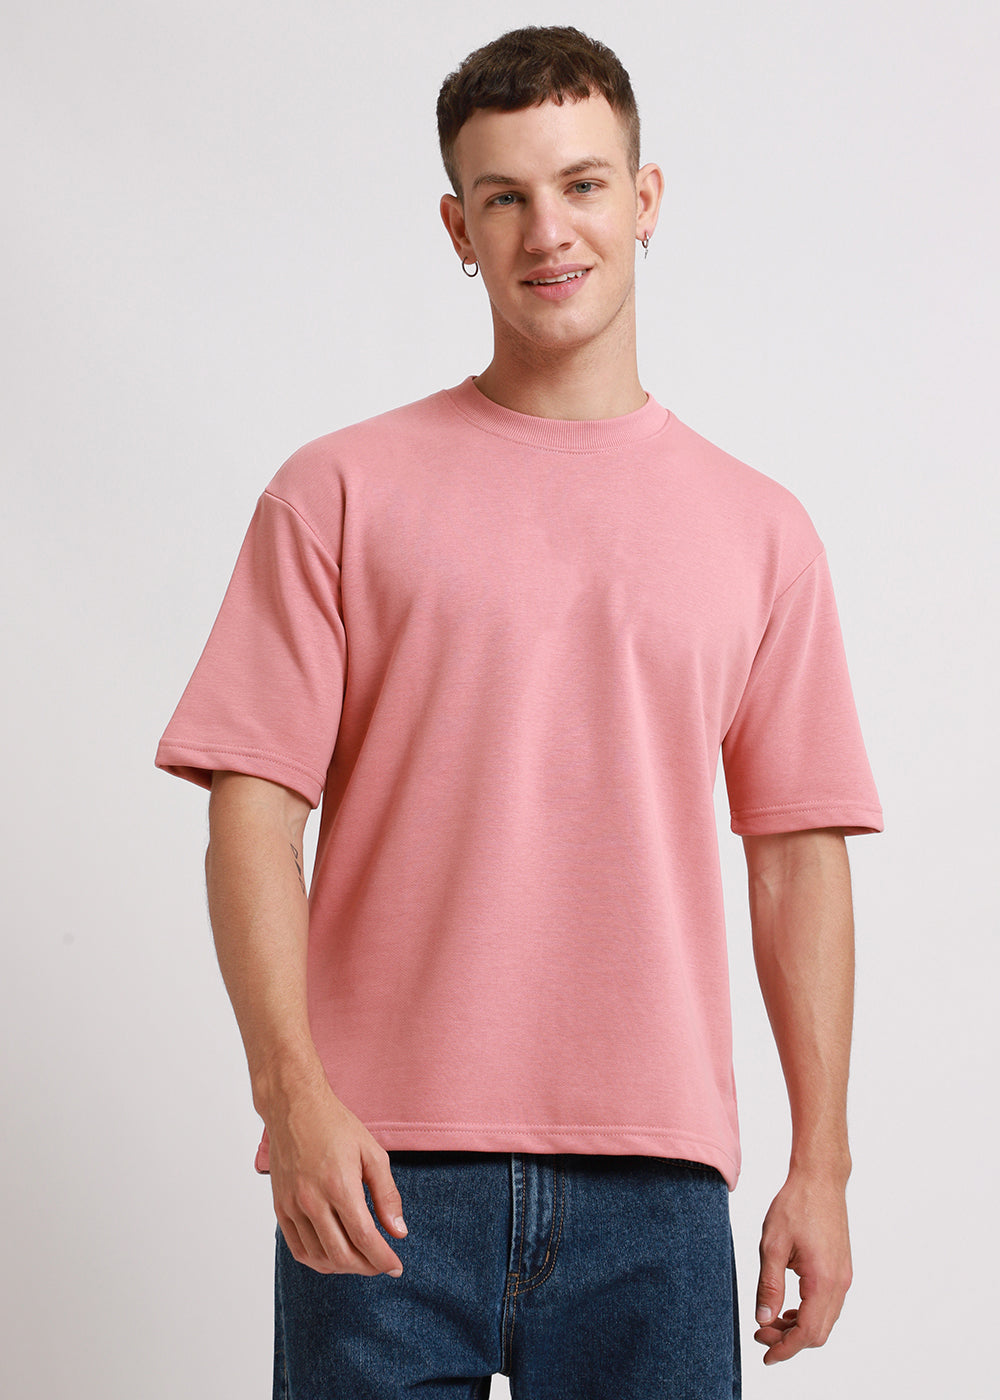 Brio Pink Oversized Basic T-shirt